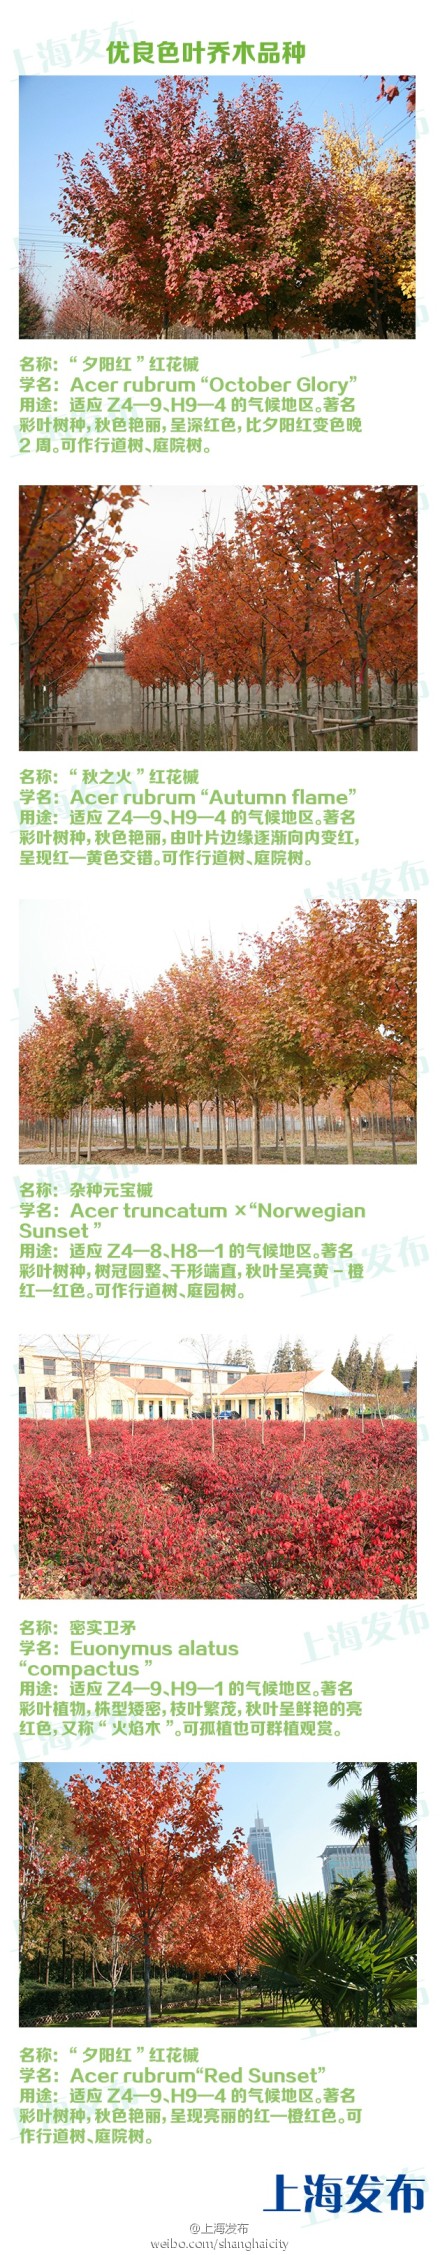 上海市将推广“色叶乔木”红花槭、火焰卫矛等